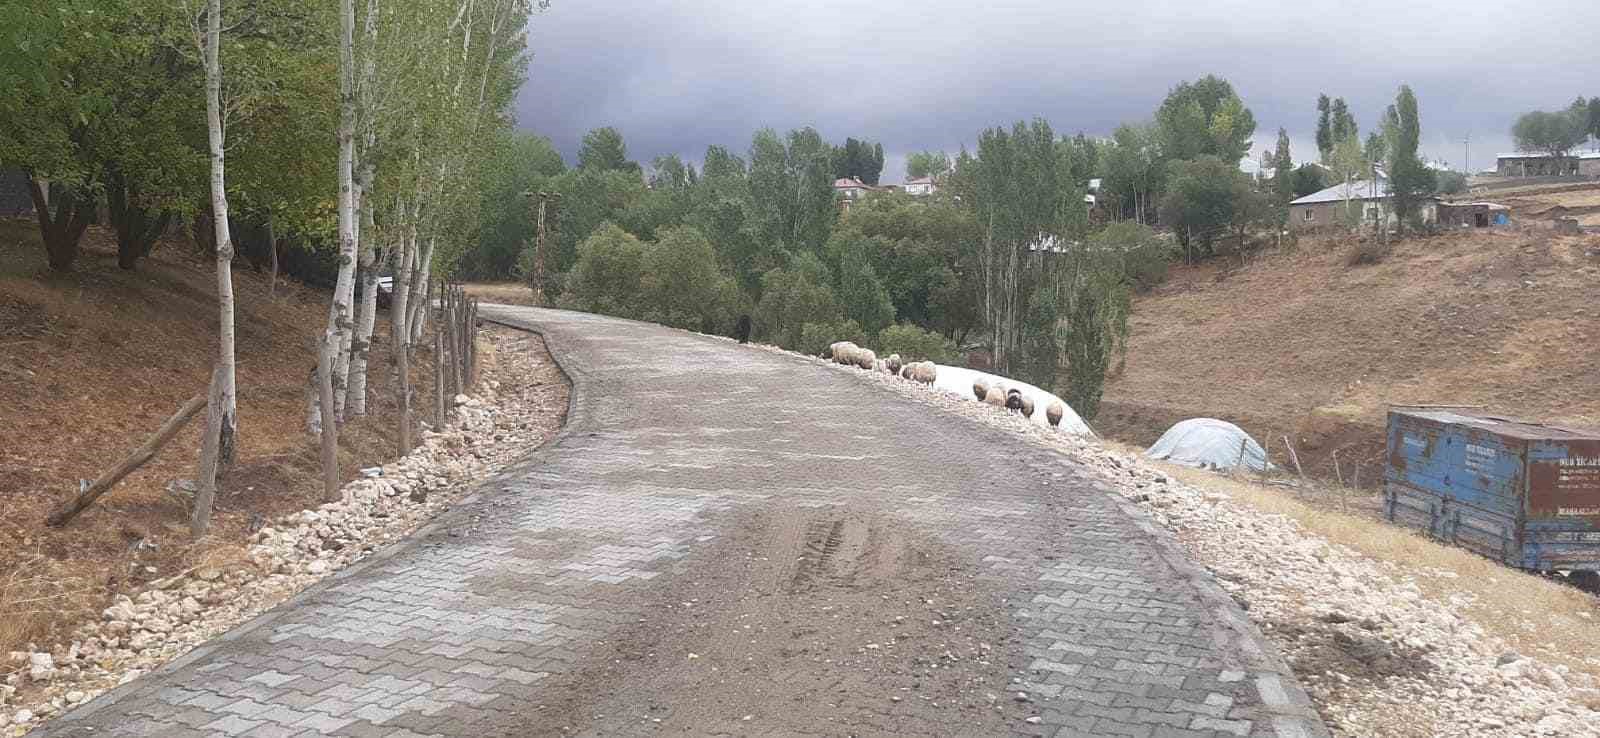 Köy Yolları Yol Çalışmaları Hız Kesmedi